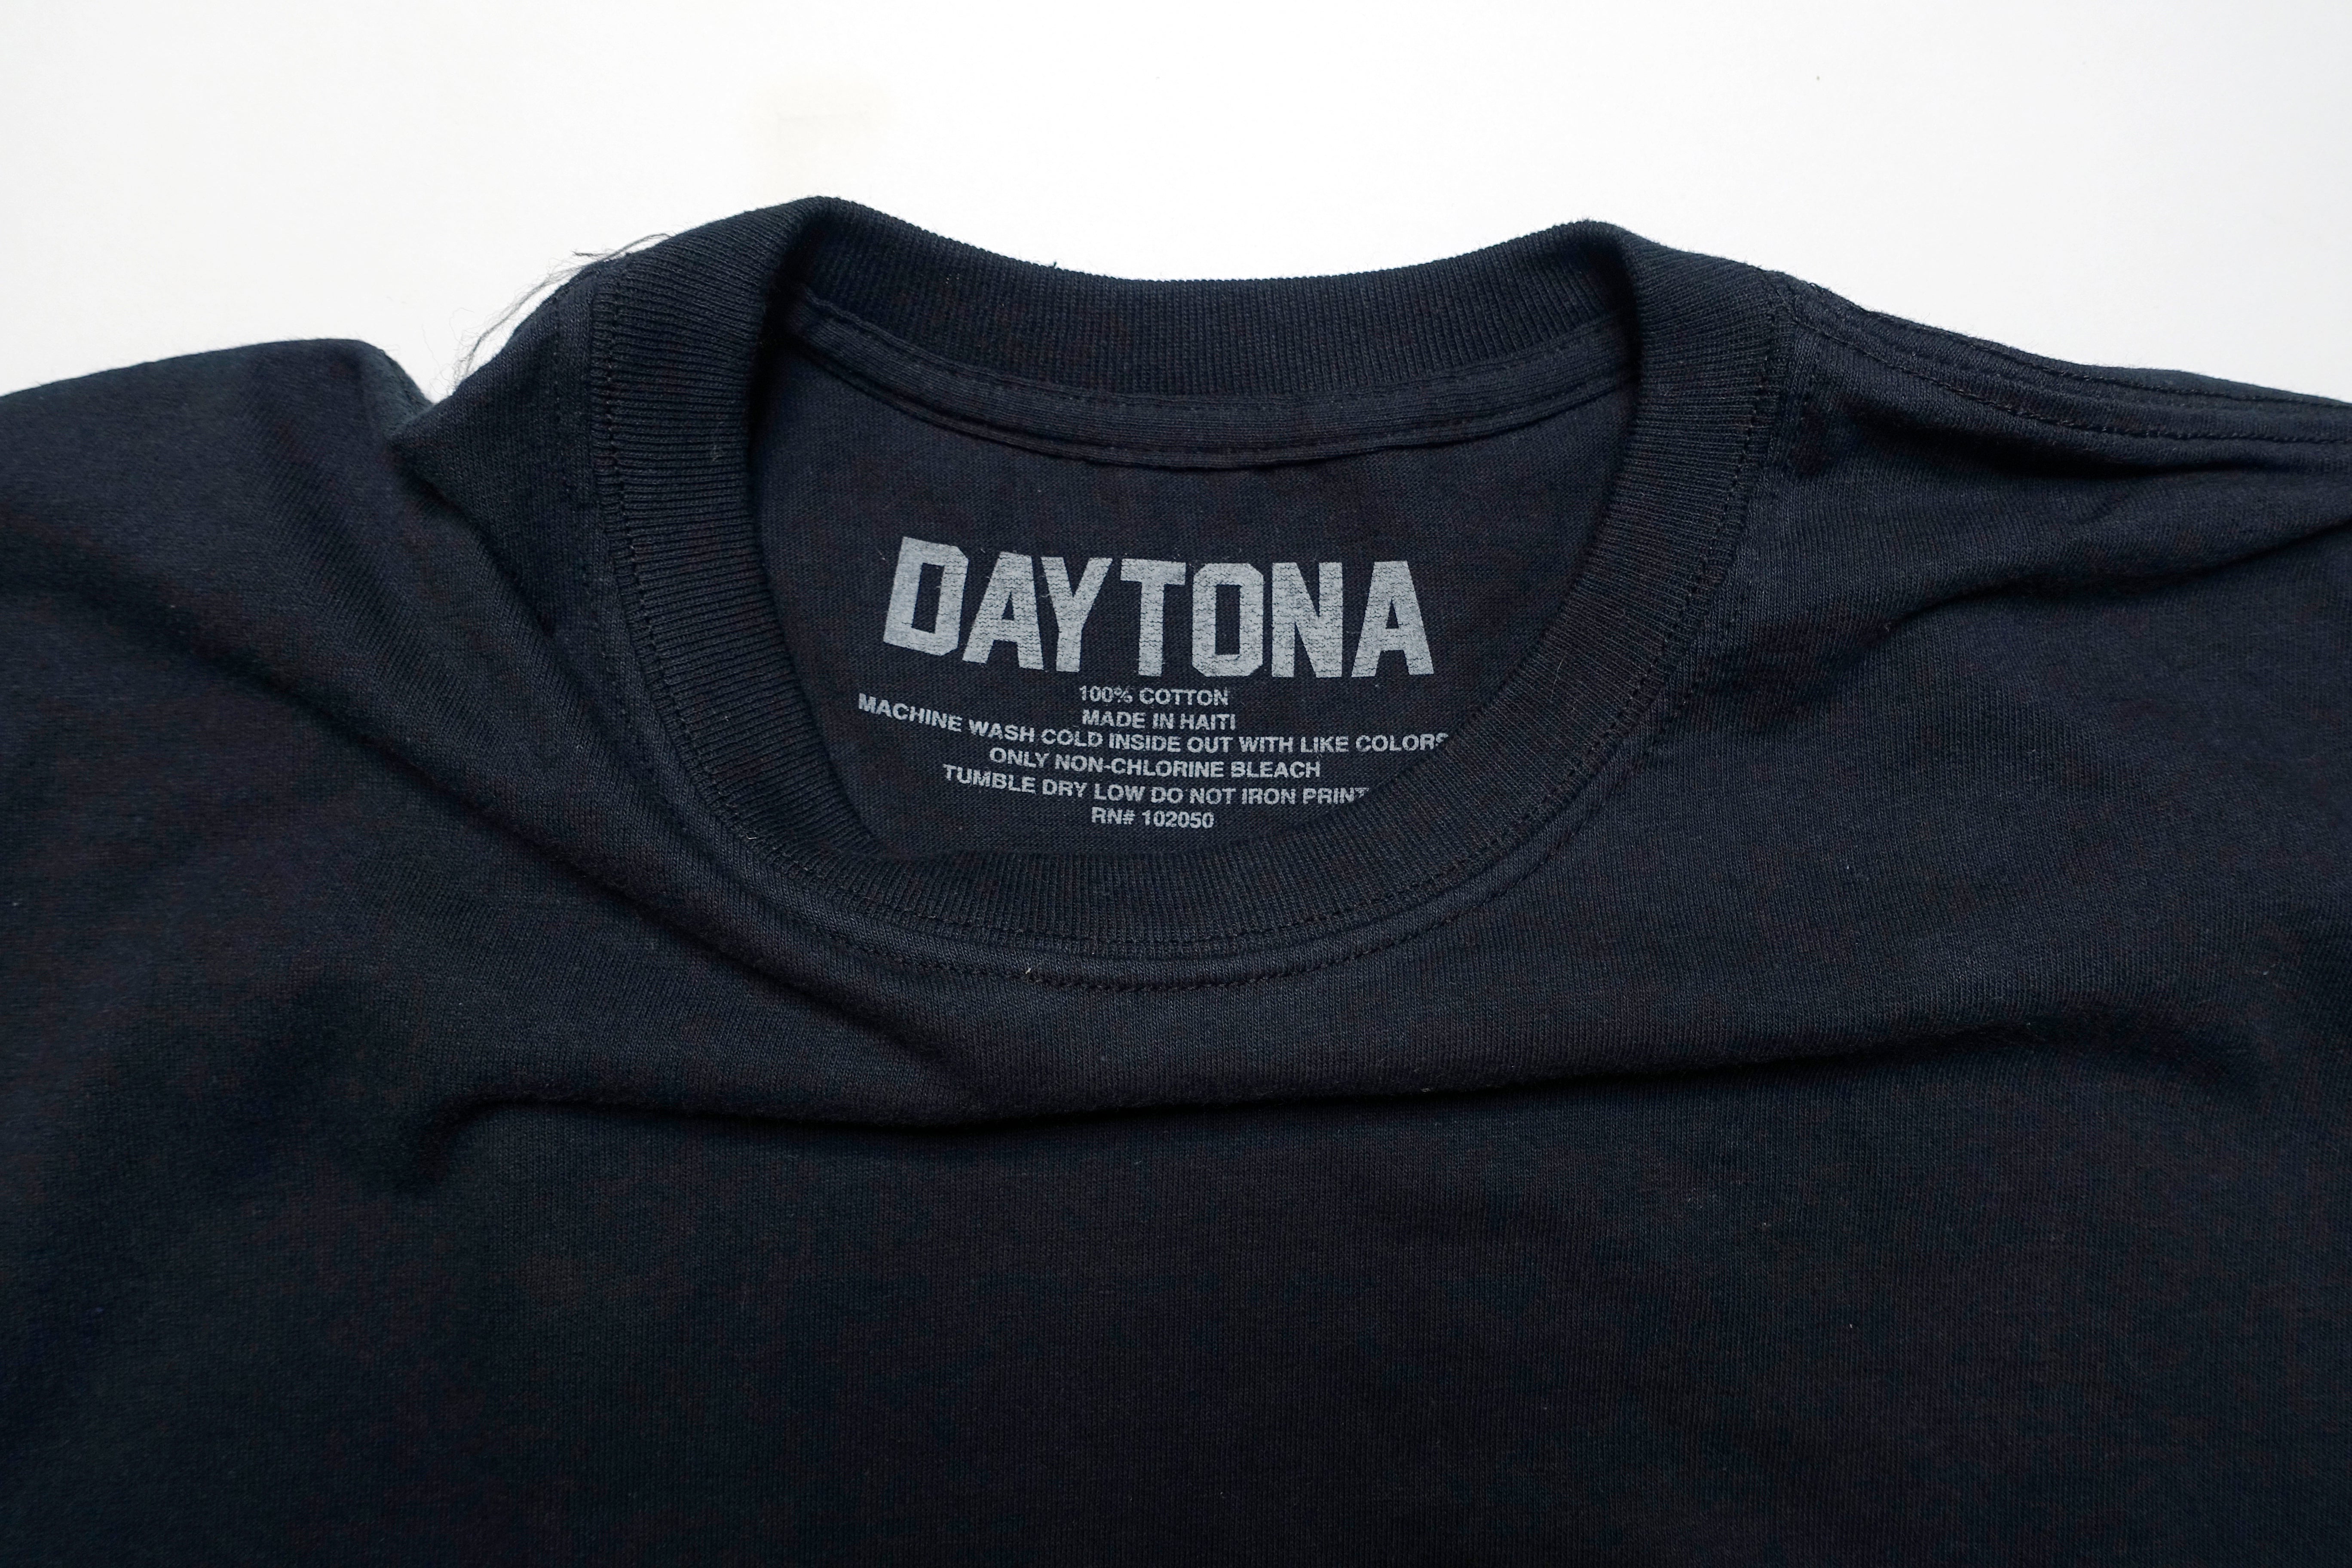 Pusha-T - Daytona 2018 Rap Album Of The Year Embroidered Shirt Size Large